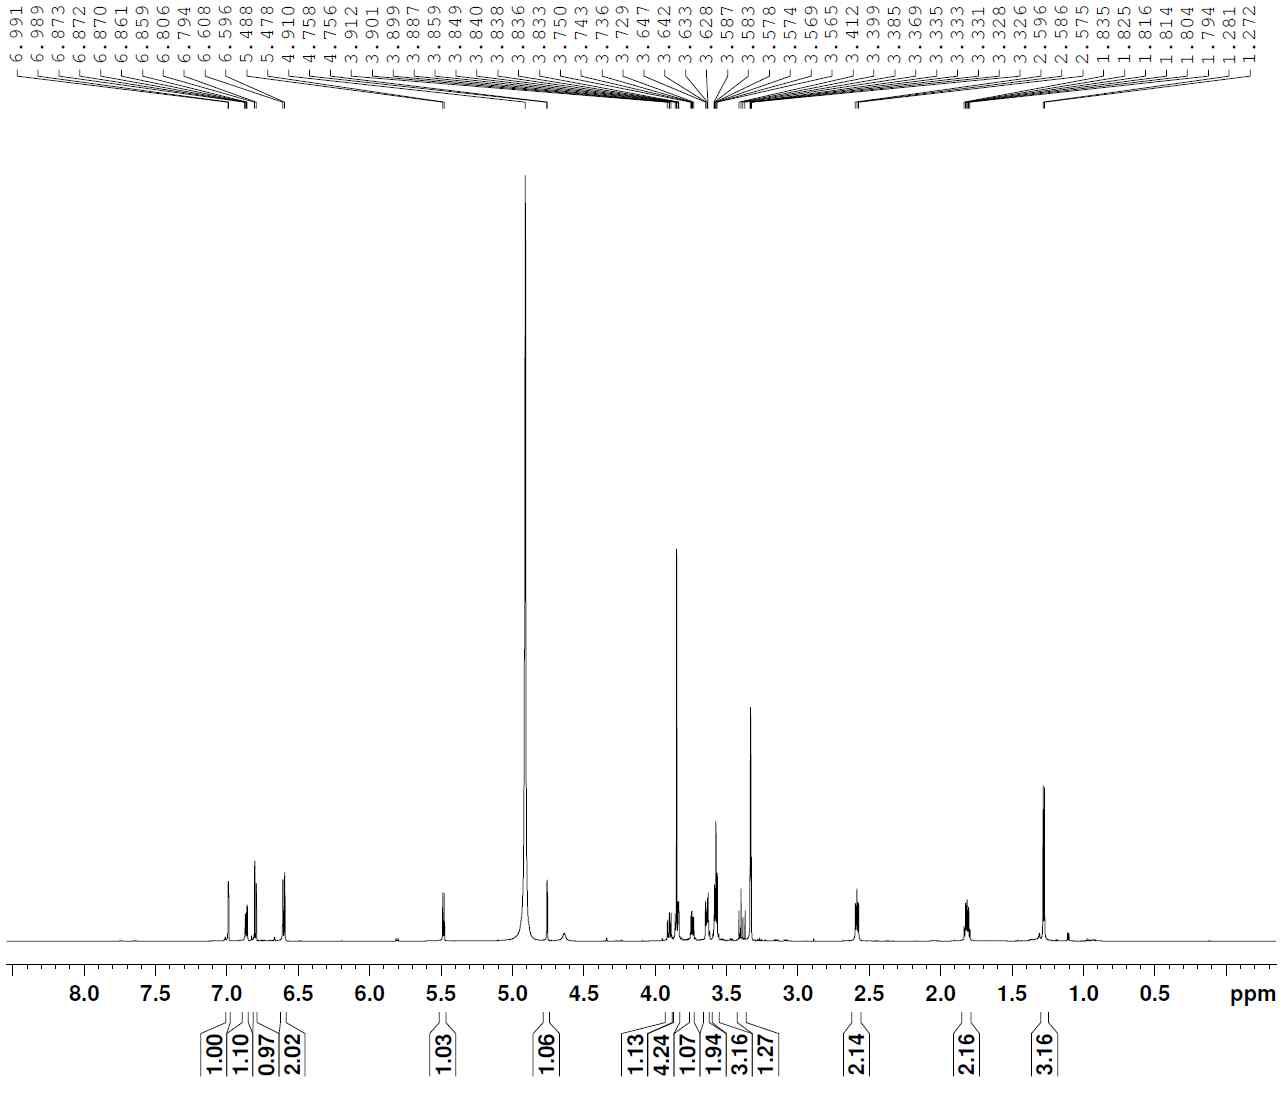 1H-NMR spectrum of compound 3